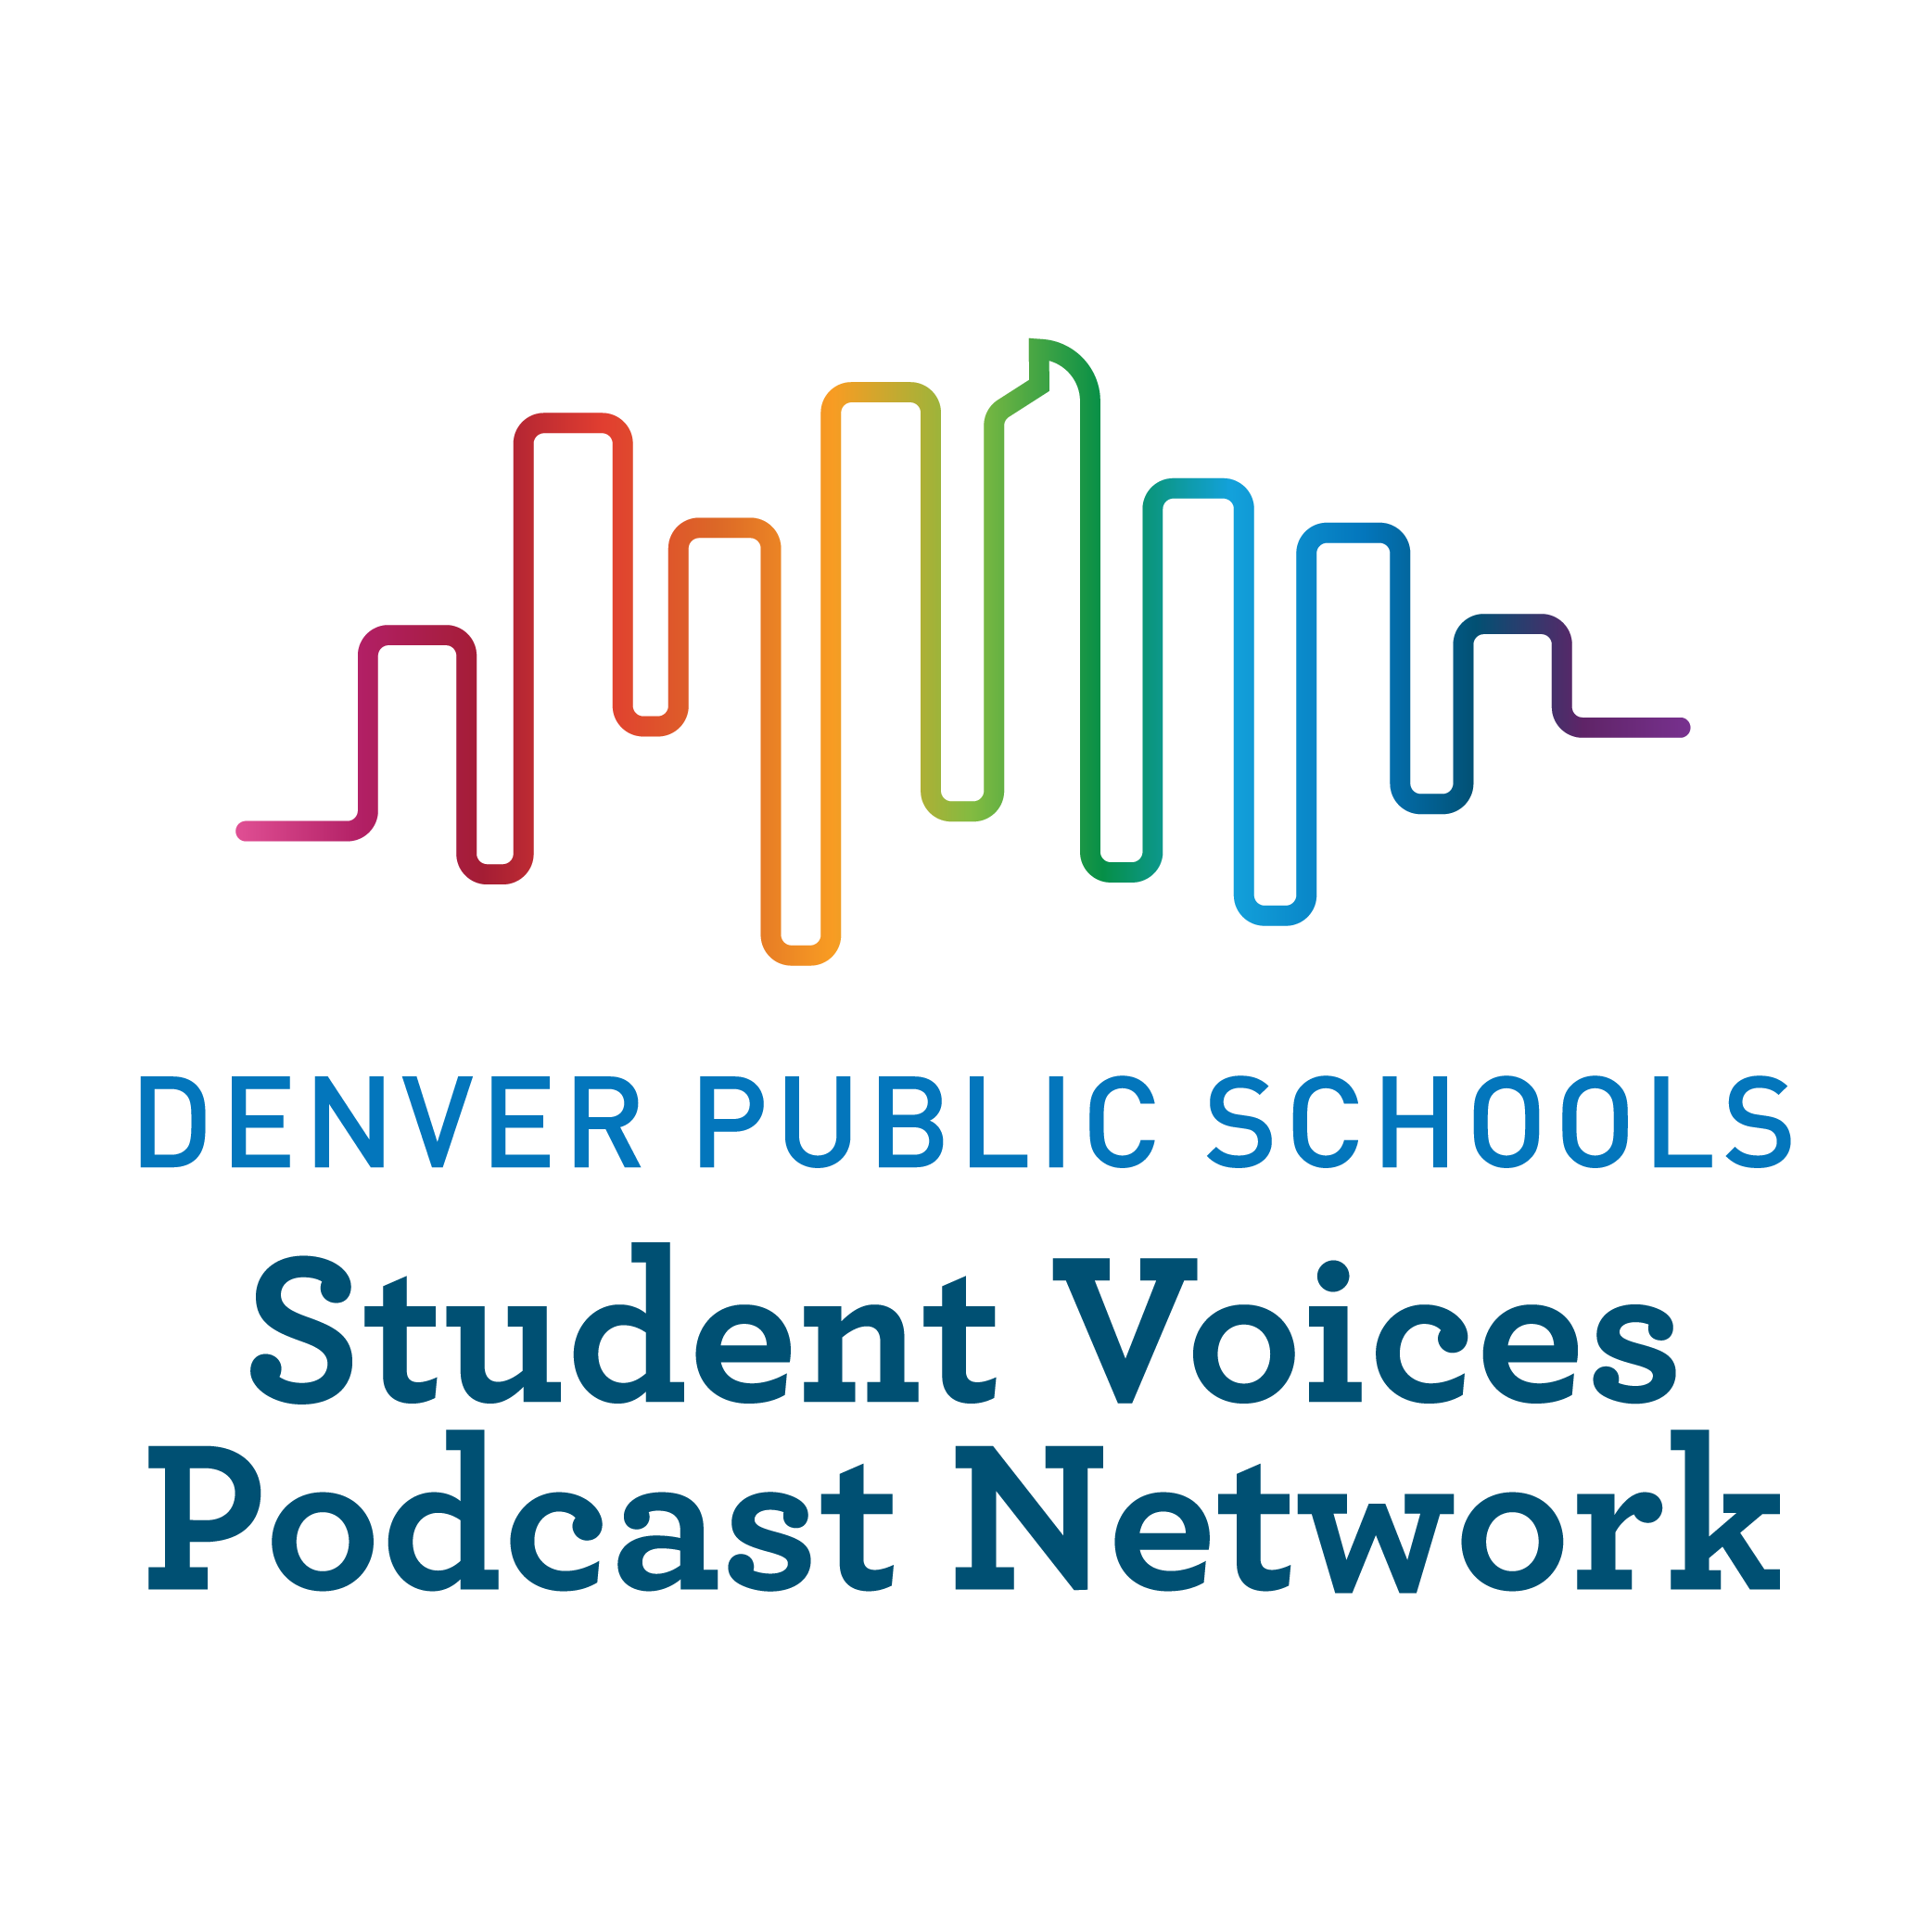 Denver Public Schools Student Voices Podcast Network logo